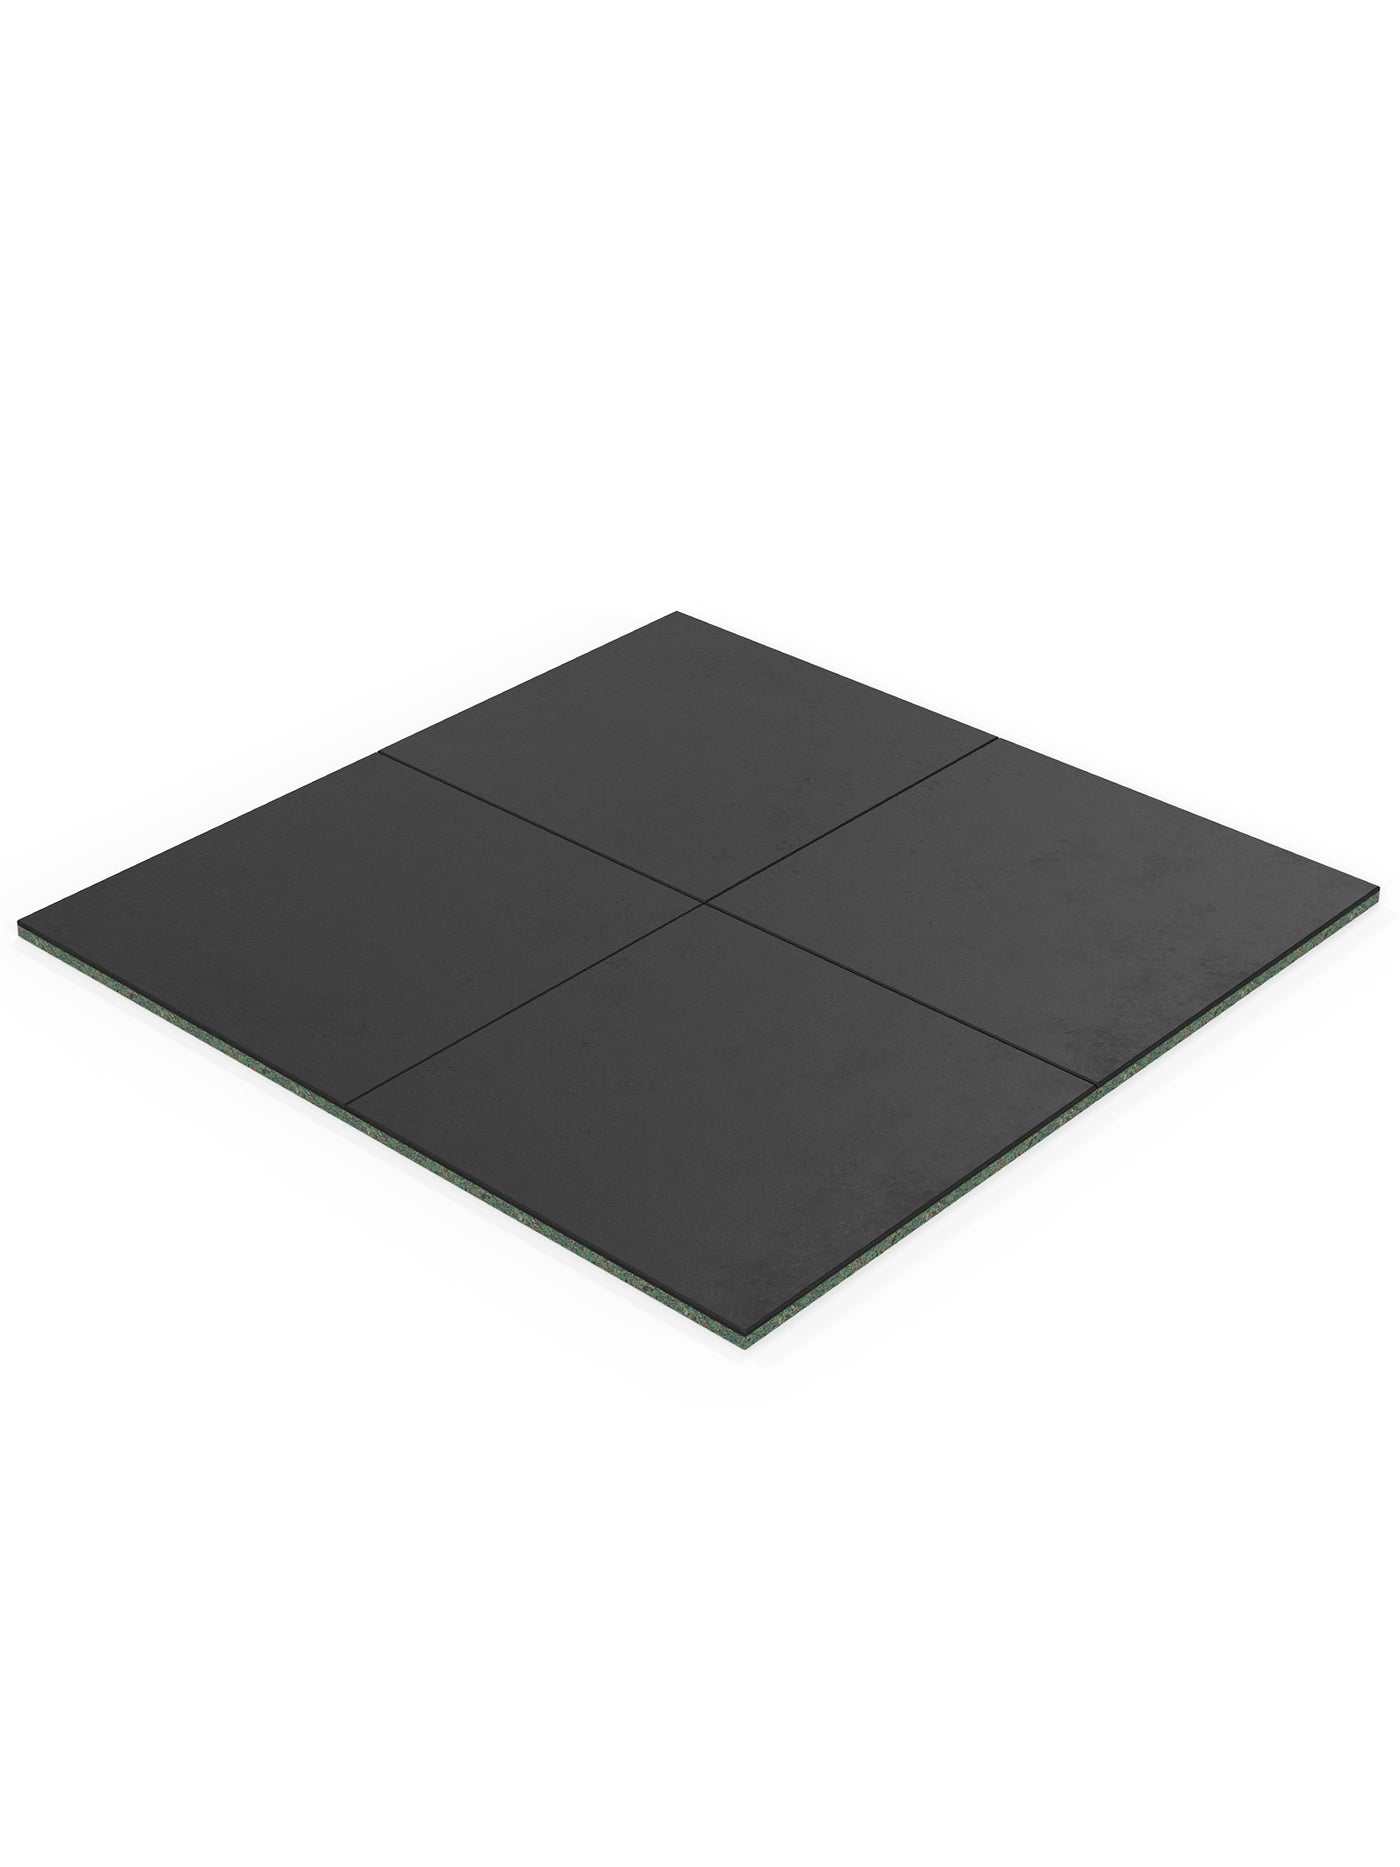 Bodenschutzmatten SolidProtect 4m2: Keltan EPDM Material | 20mm Stärke | hohes Eigengewicht | Feingranulat Oberfläche | 0.8mm Körnung, #size_4-matten-a-100x100cm